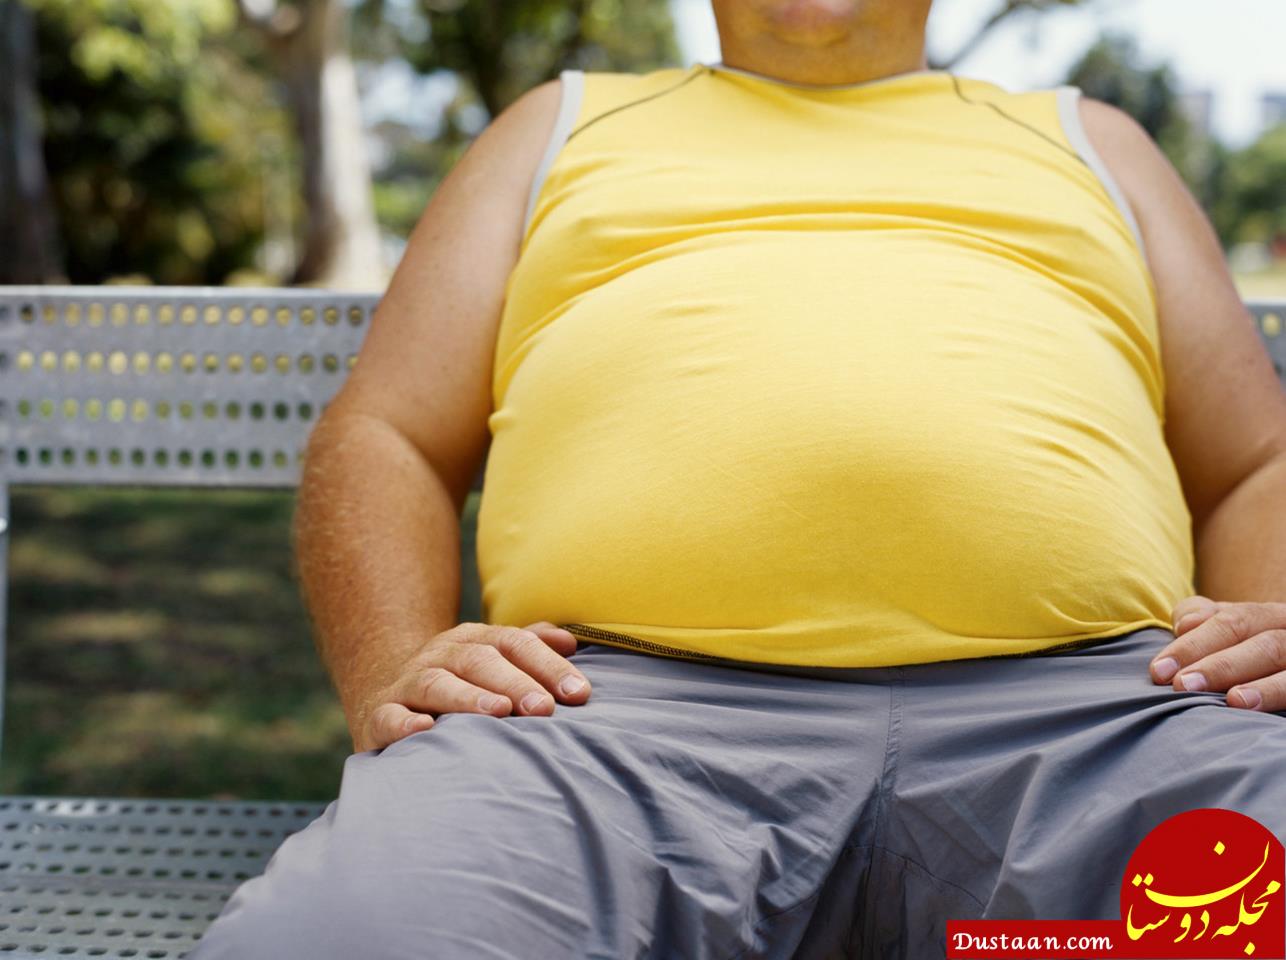 غذاهای چرب باعث چاقی نمی شوند؛ قند عامل اصلی چاقیست!